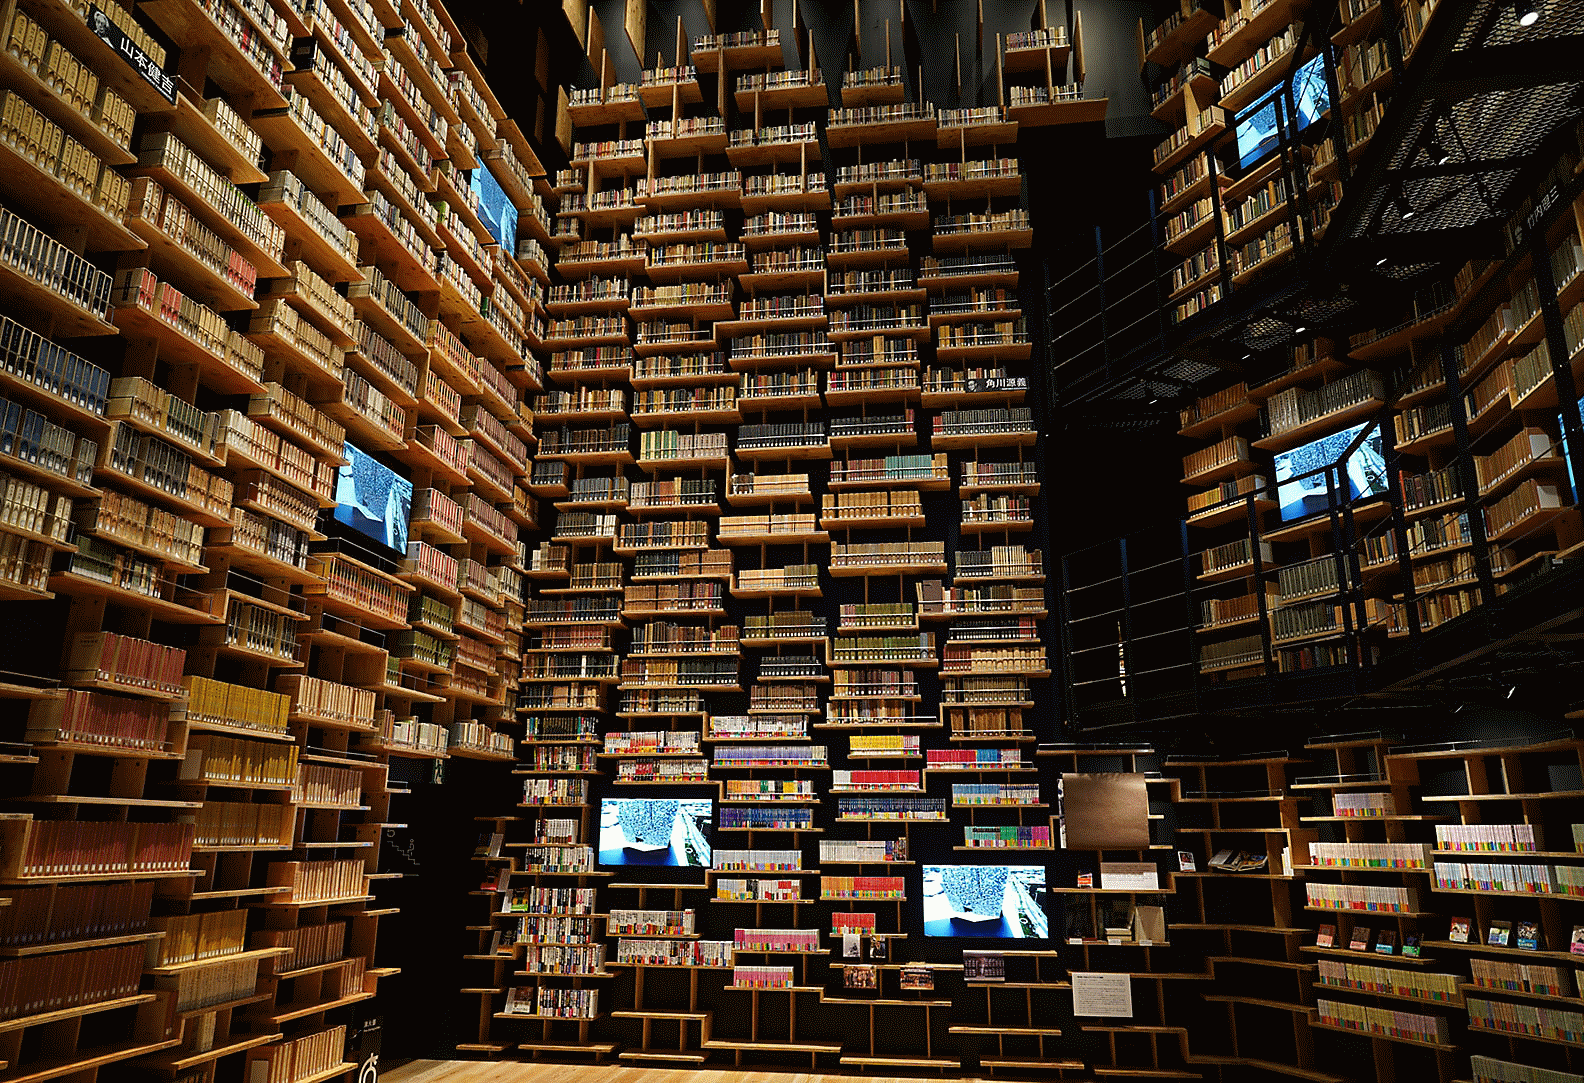 Εικόνα εσωτερικού βιβλιοθήκης, τραβηγμένη με αυτόν τον φακό, με υψηλή ανάλυση σε κάθε γωνία.